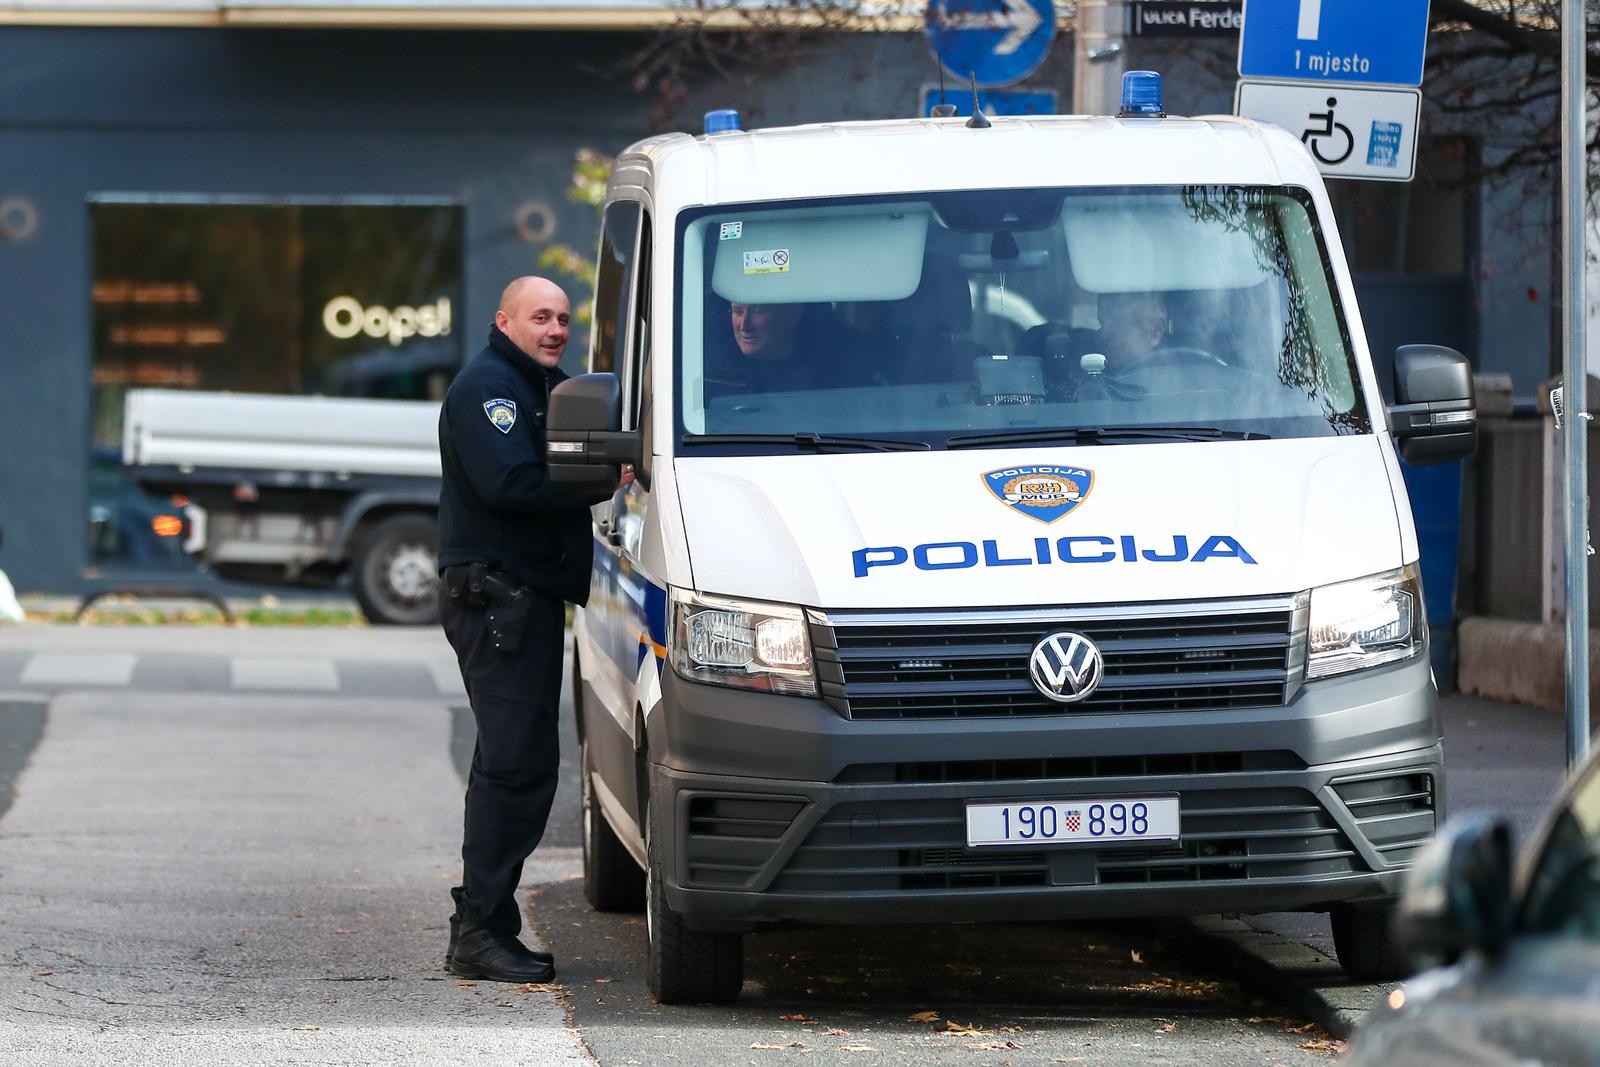 23.11.2023., Zagreb - Policija ispred zgrade Kvaternik Plaza gdje je u tijeku pretres. Photo: Matija Habljak/PIXSELL